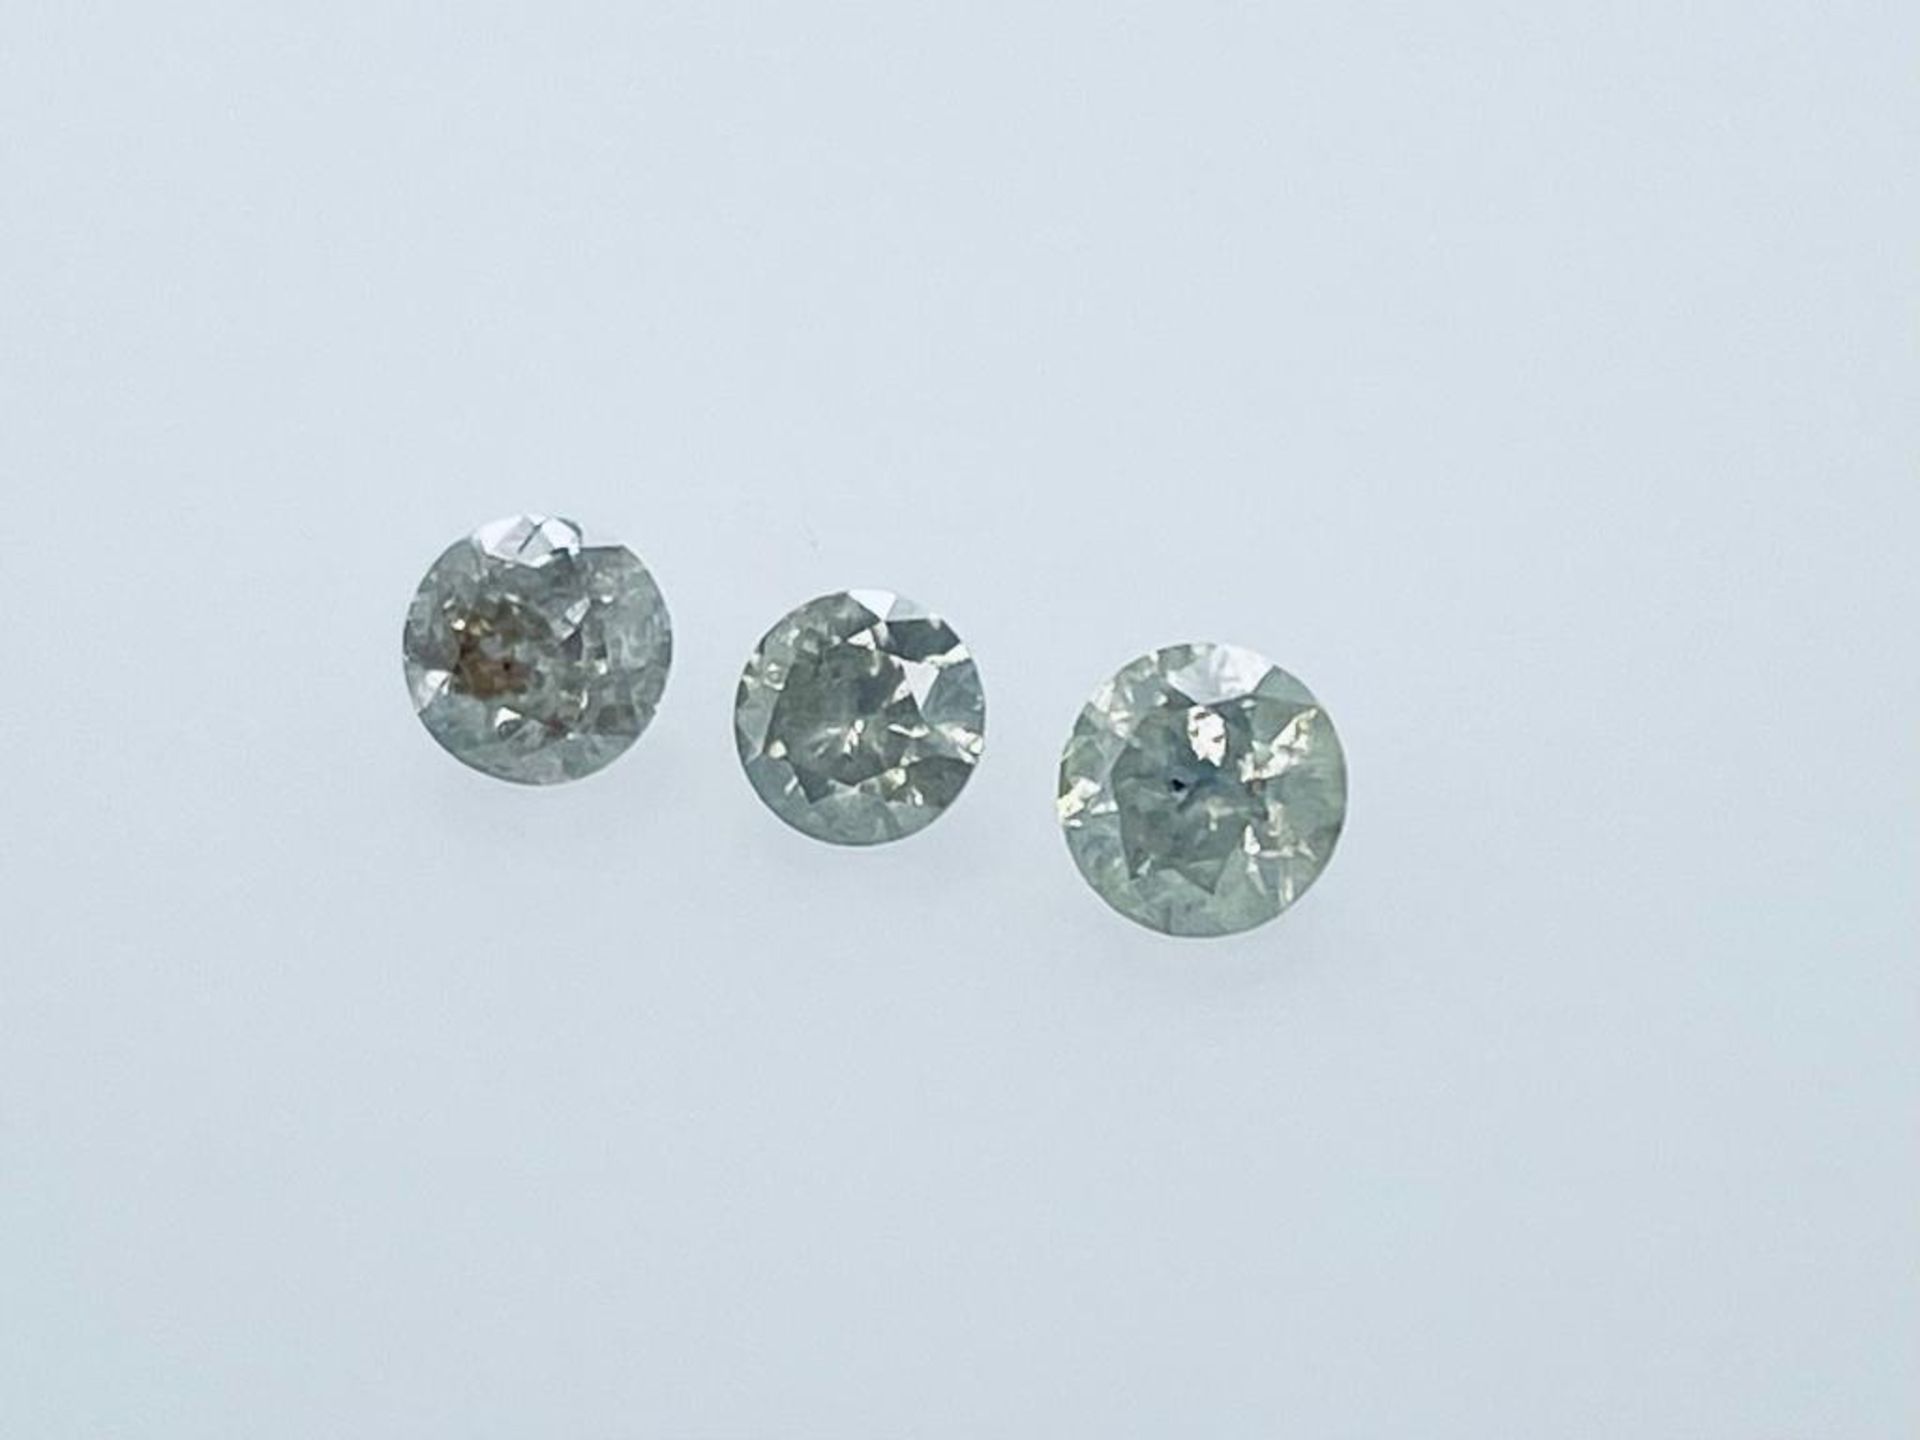 3 DIAMONDS 1.57 CT TOTAL K -M - I3 - BRILLIANT CUT - ID CERTIFICATE - C20306-12H